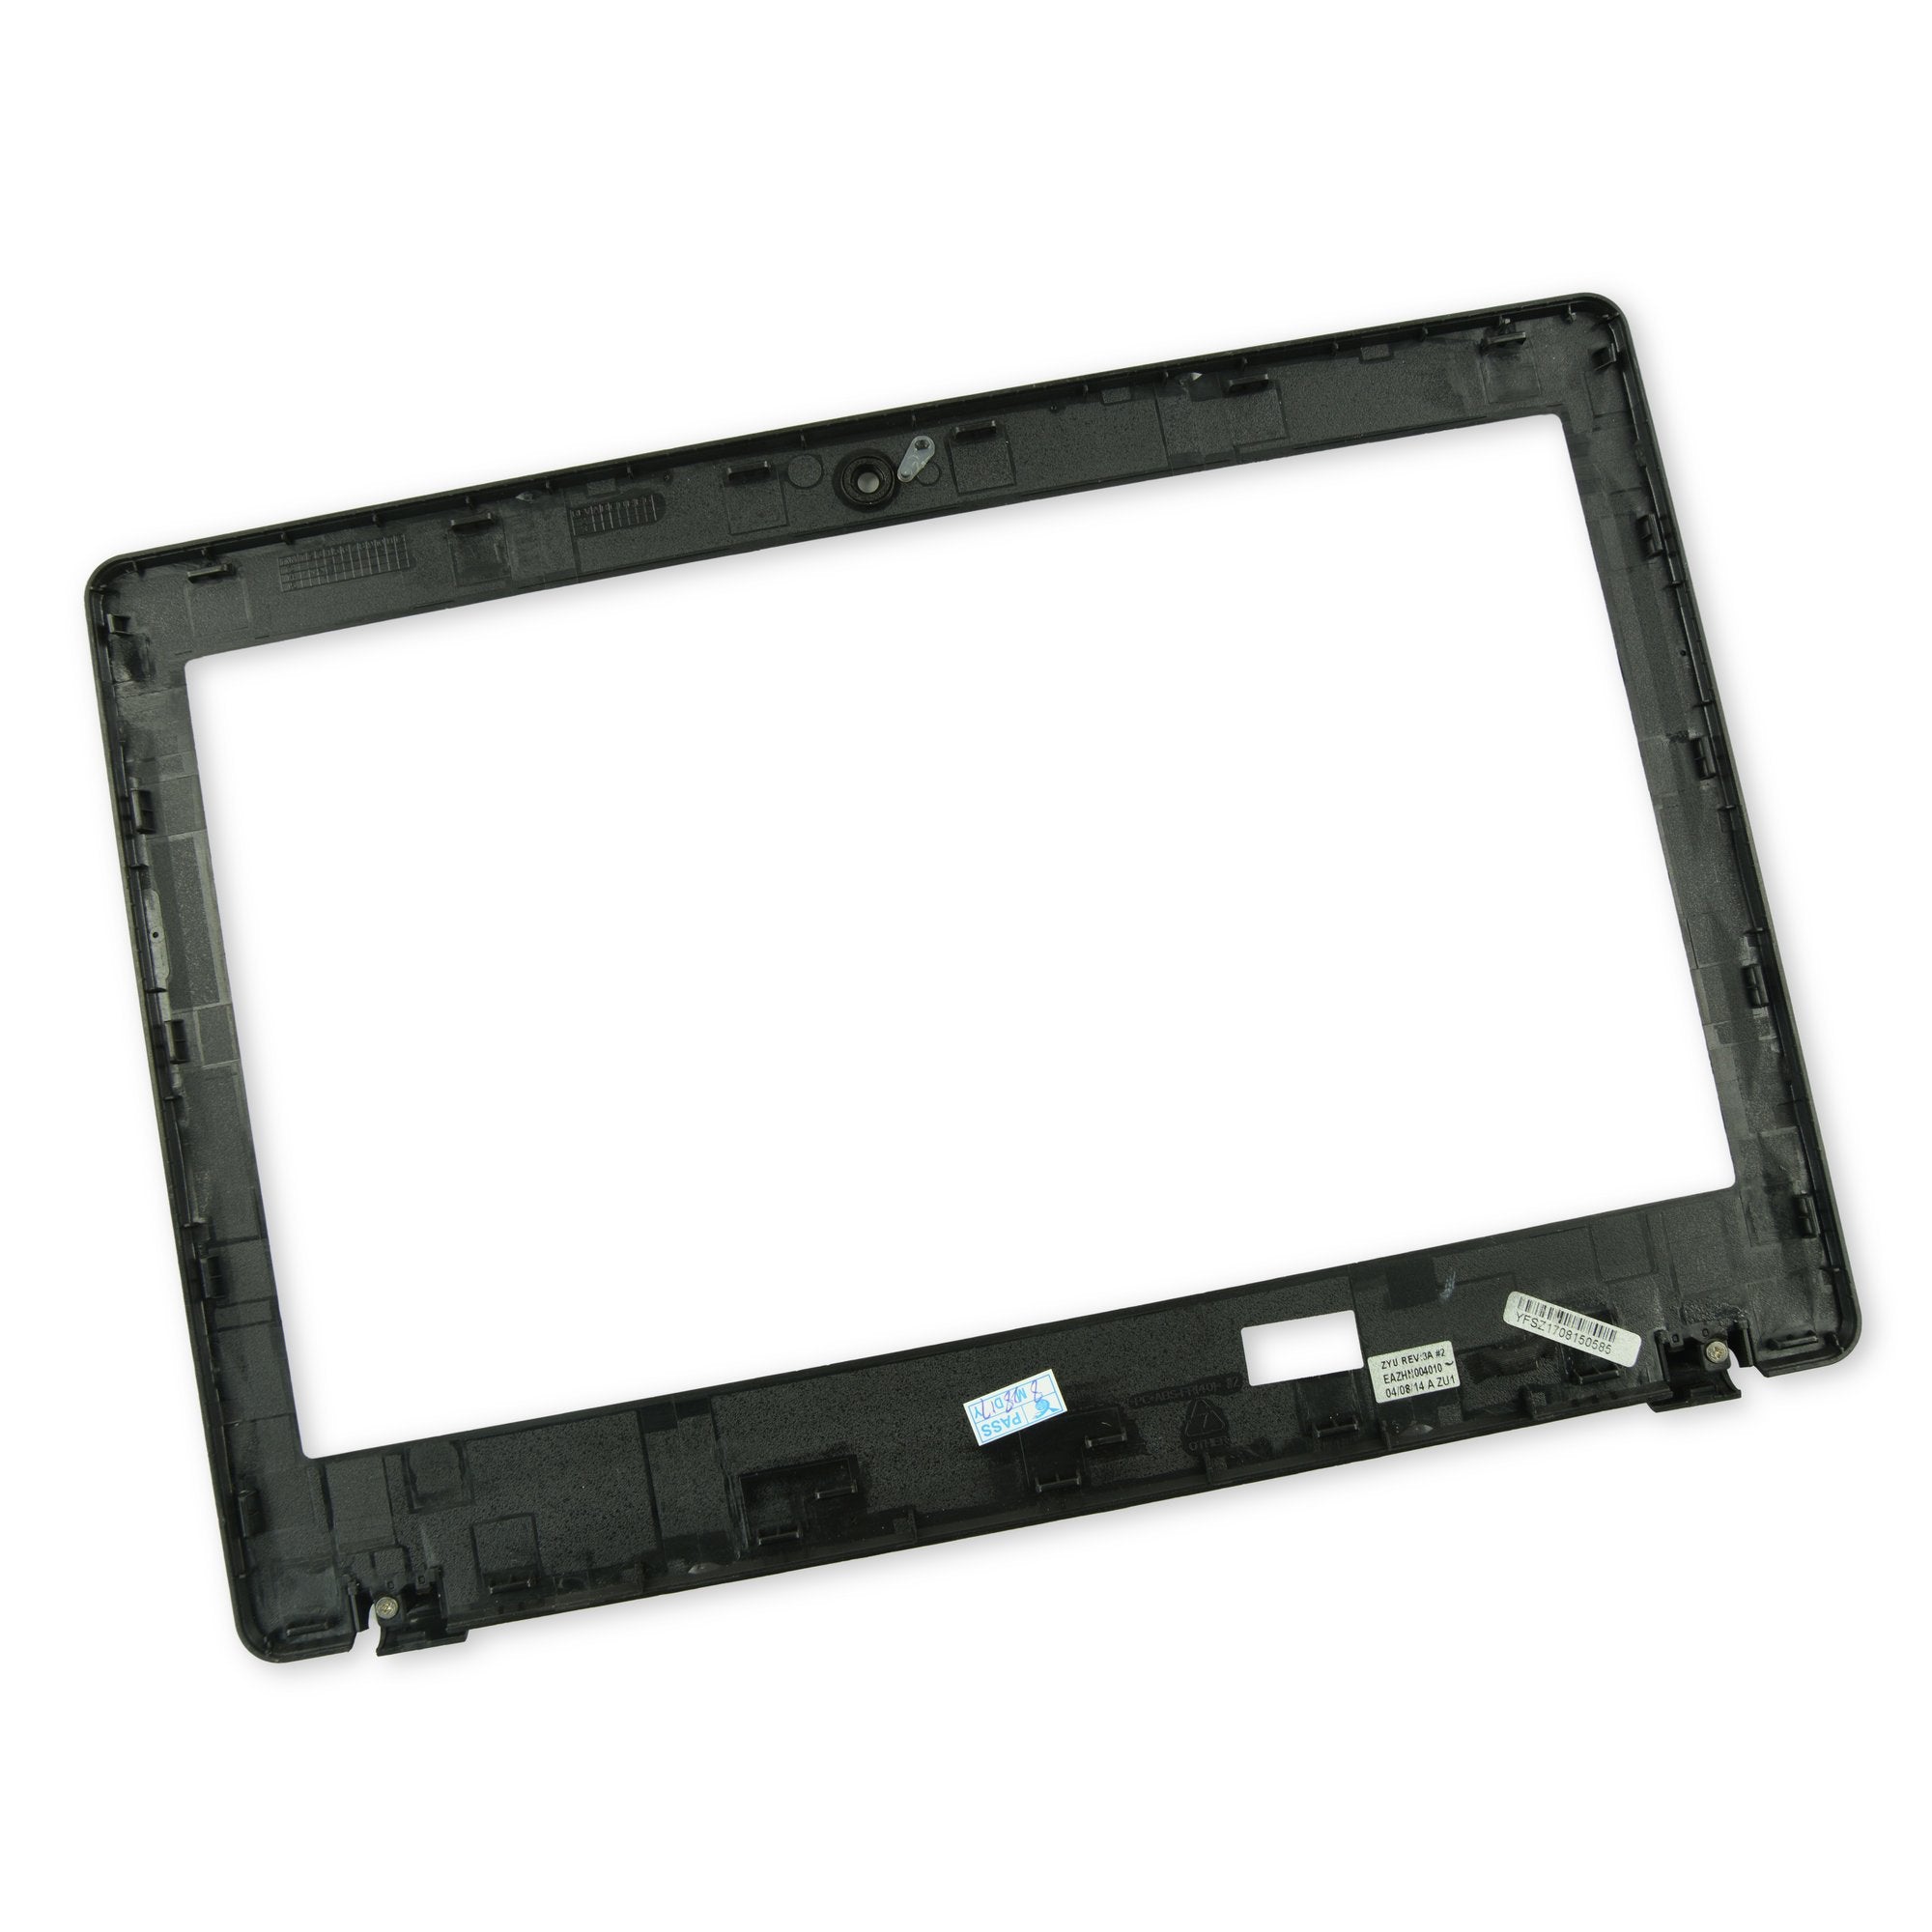 Acer Chromebook C720 LCD Bezel